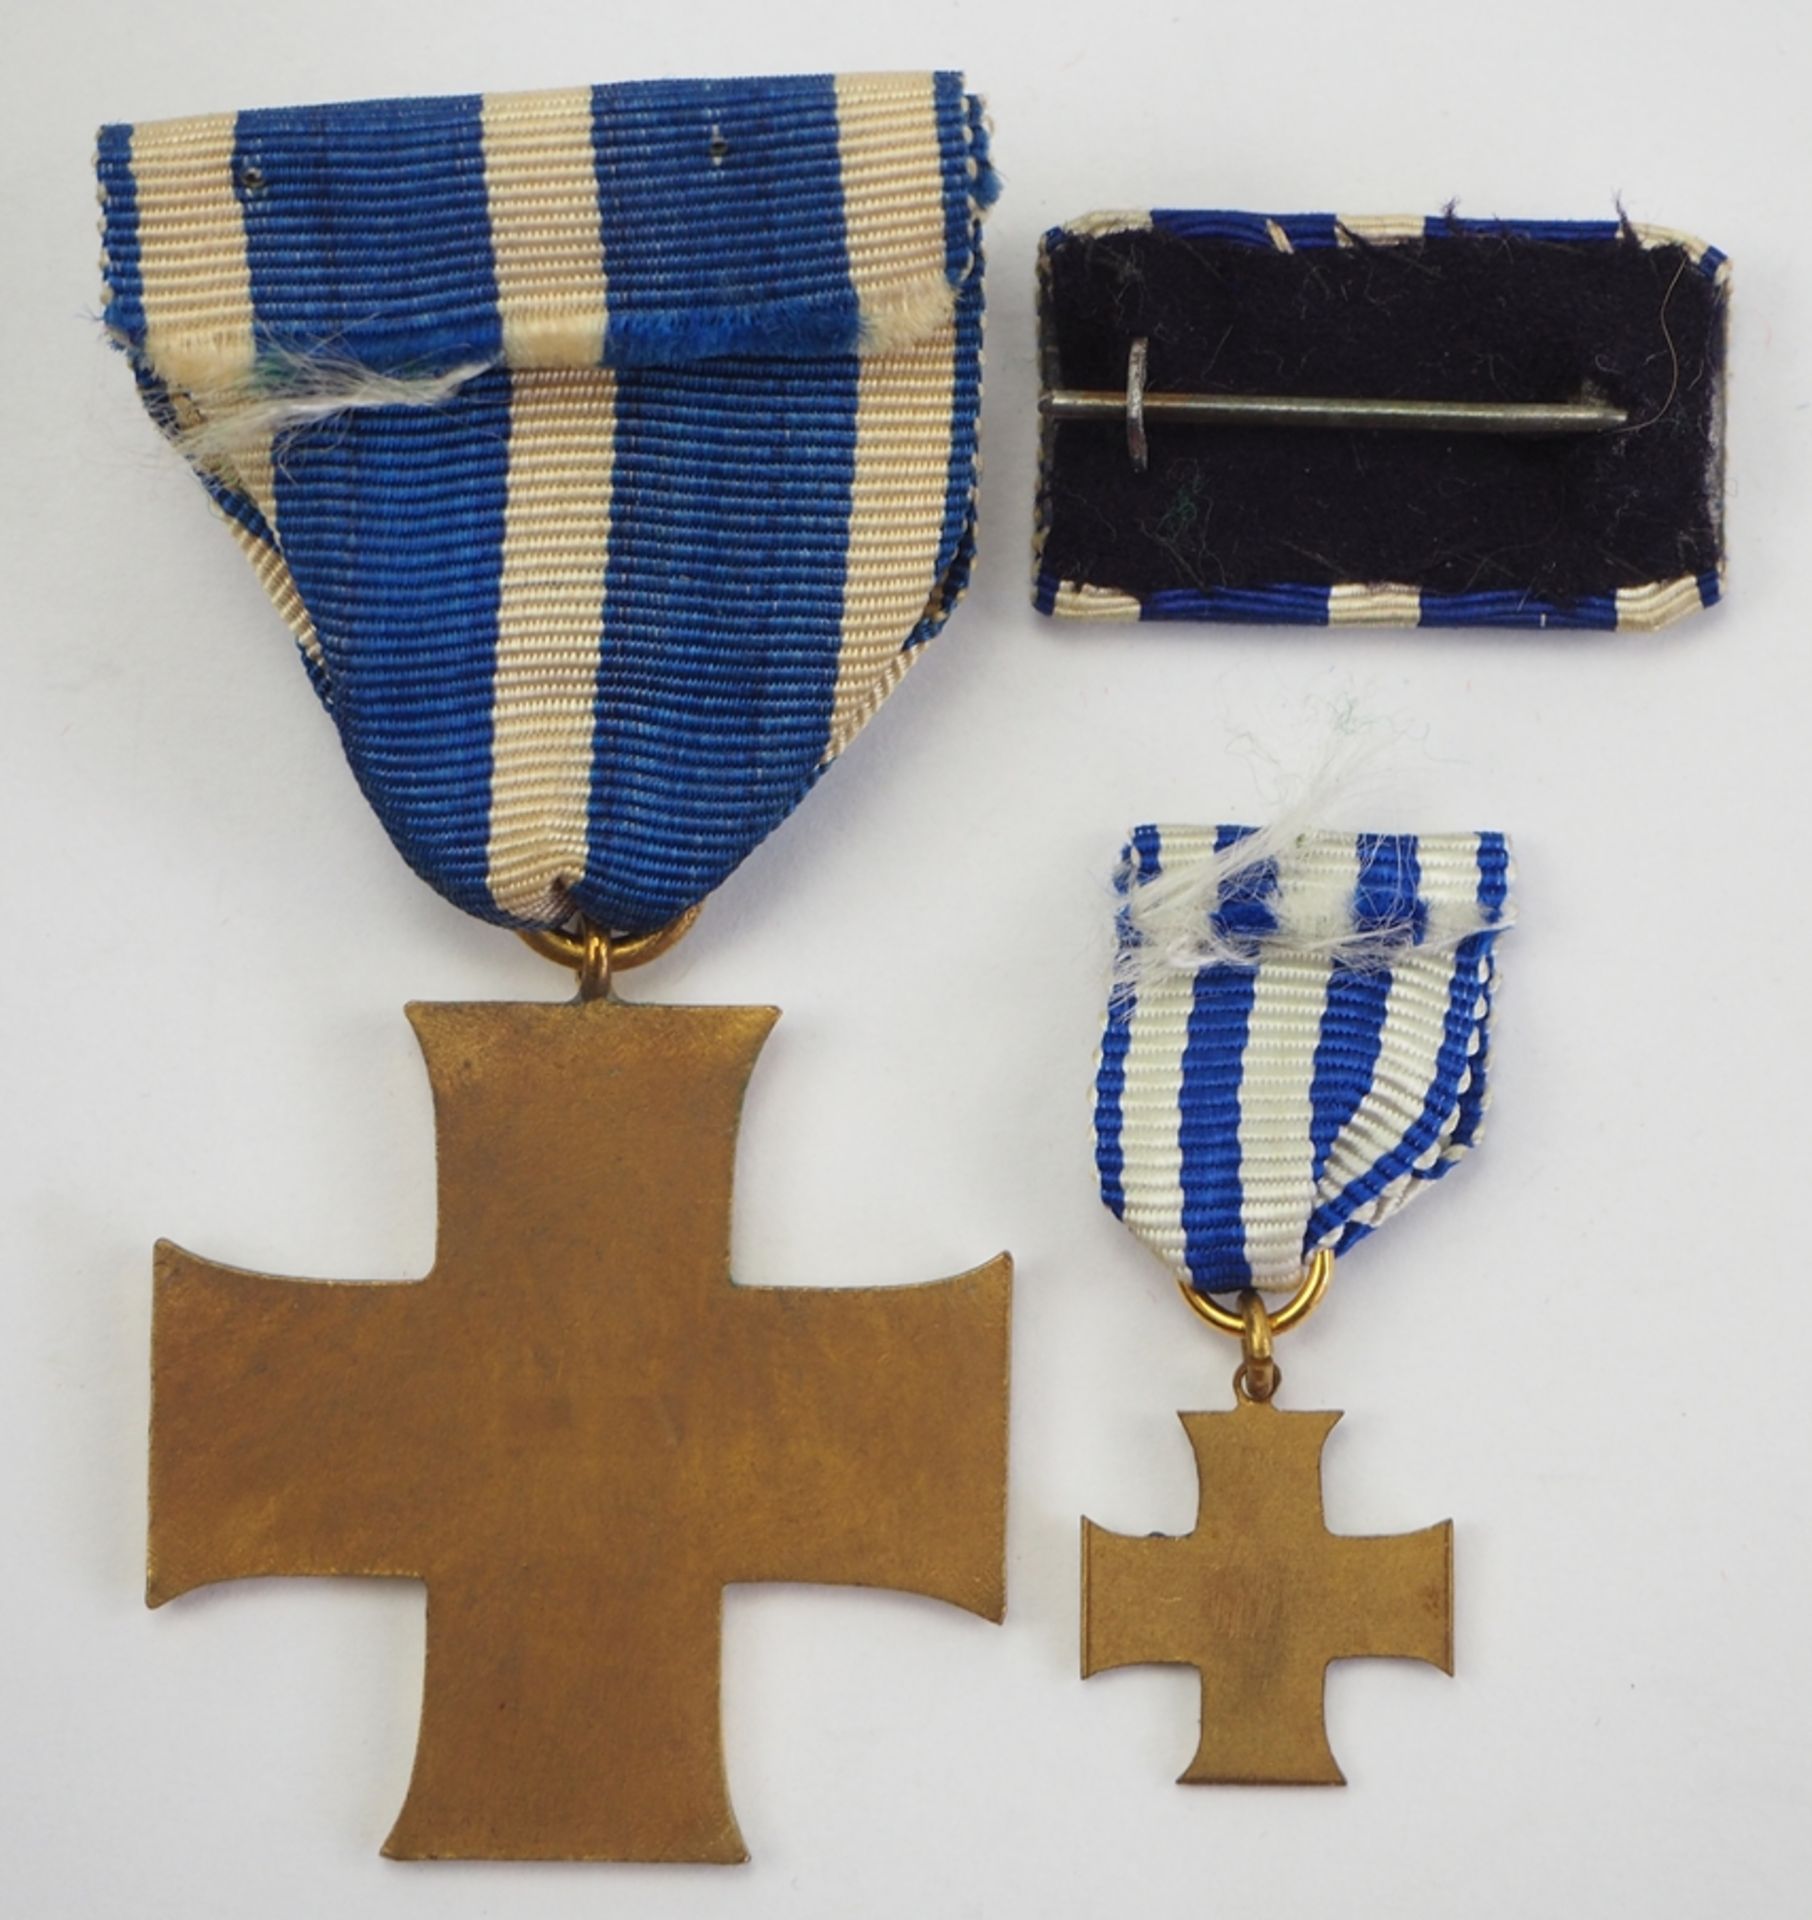 Schaumburg-Lippe: Kreuz für Treue Dienste (1914-1918), mit Miniatur. - Bild 2 aus 2